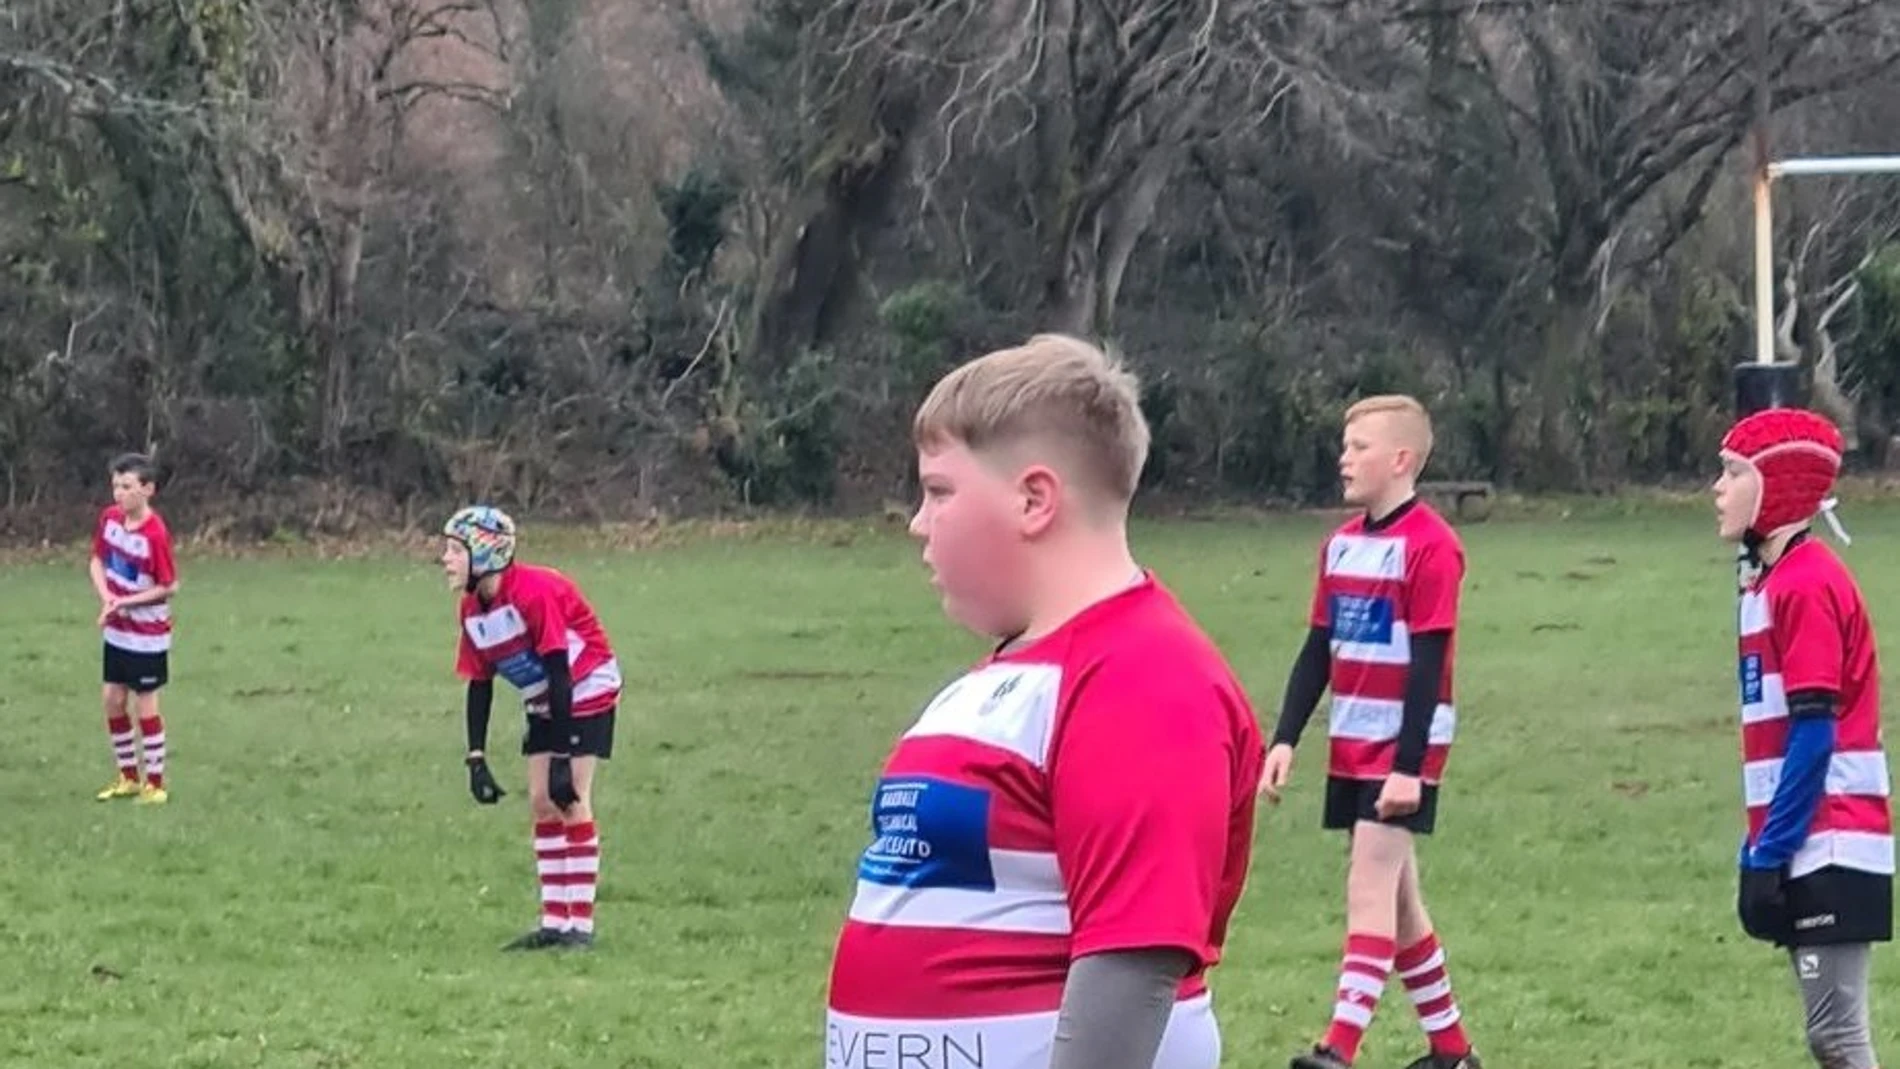 El mundo del rugby se vuelca con Alfie, un niño de 12 años objeto de mofas por su aspecto físico